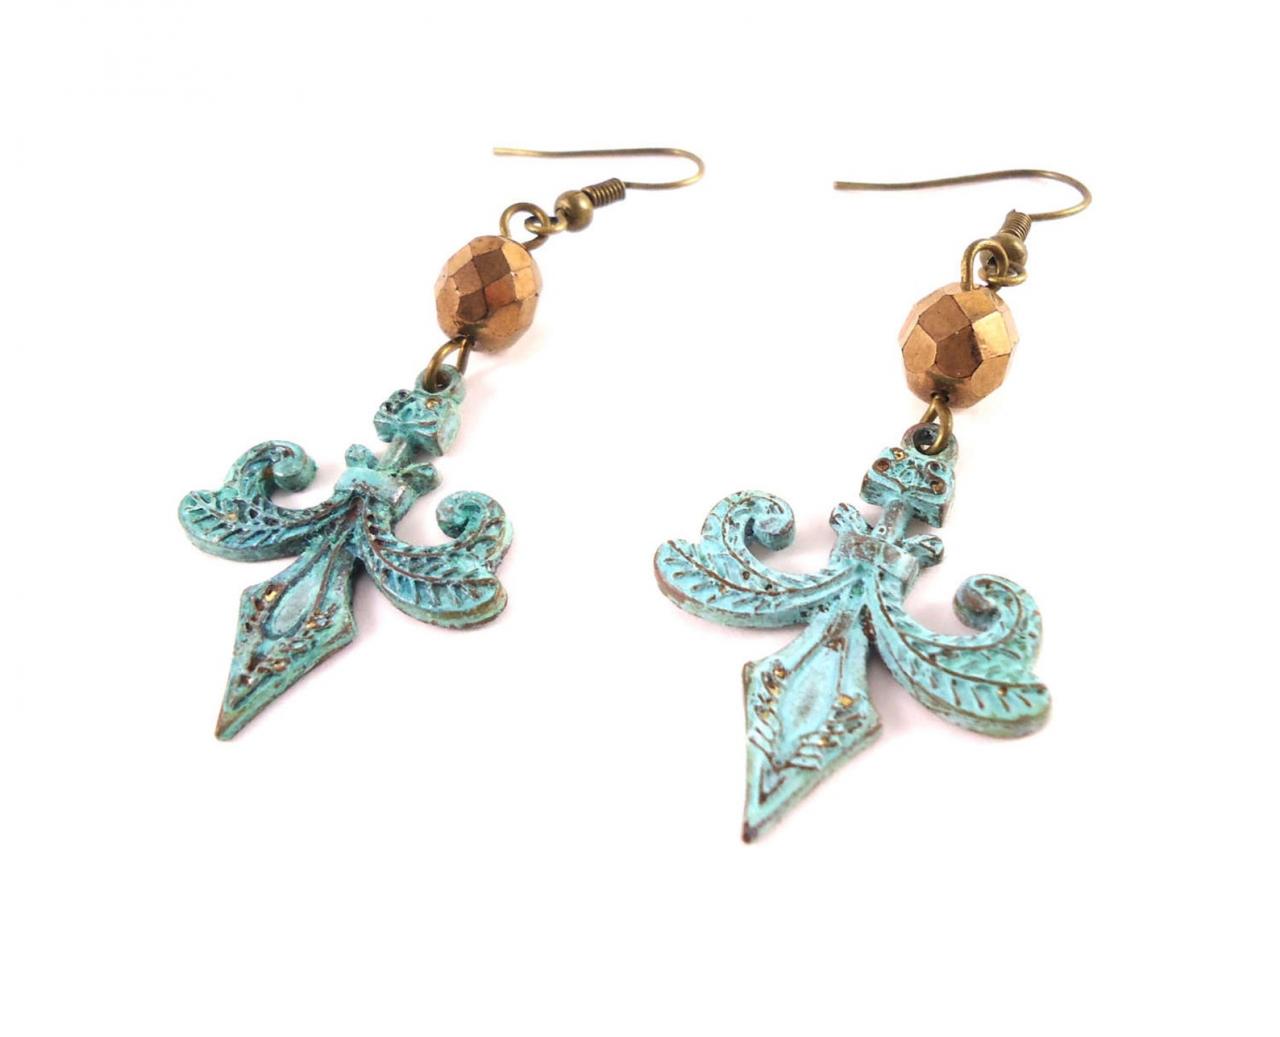 Fleur De Lis Earrings - Boho Earrings For Sister - Victorian Earrings - Patina Earrings - Rustic Earrings - Girlfriend Jewelry Idea